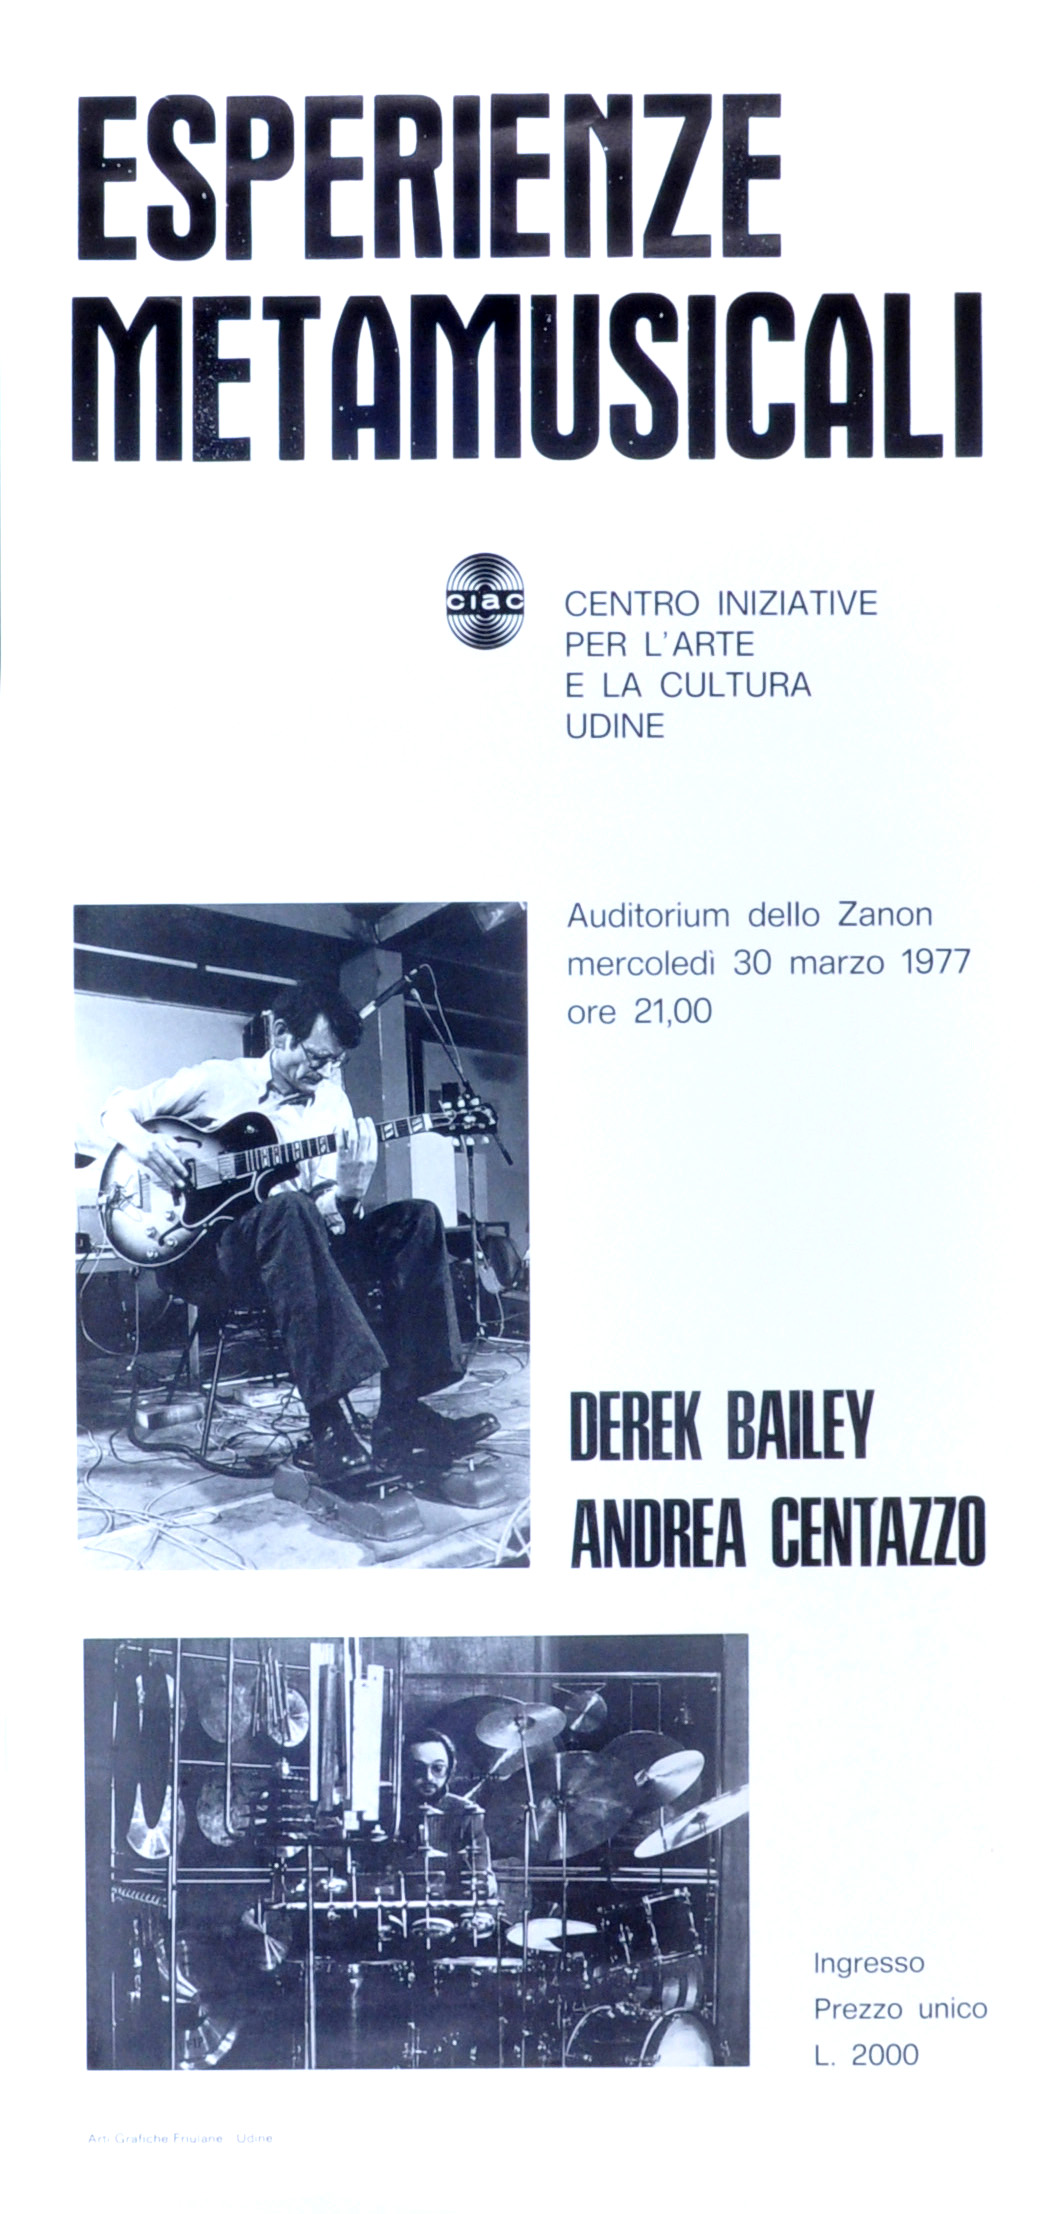 Concerto del duo Bailey-Centazzo, 1977